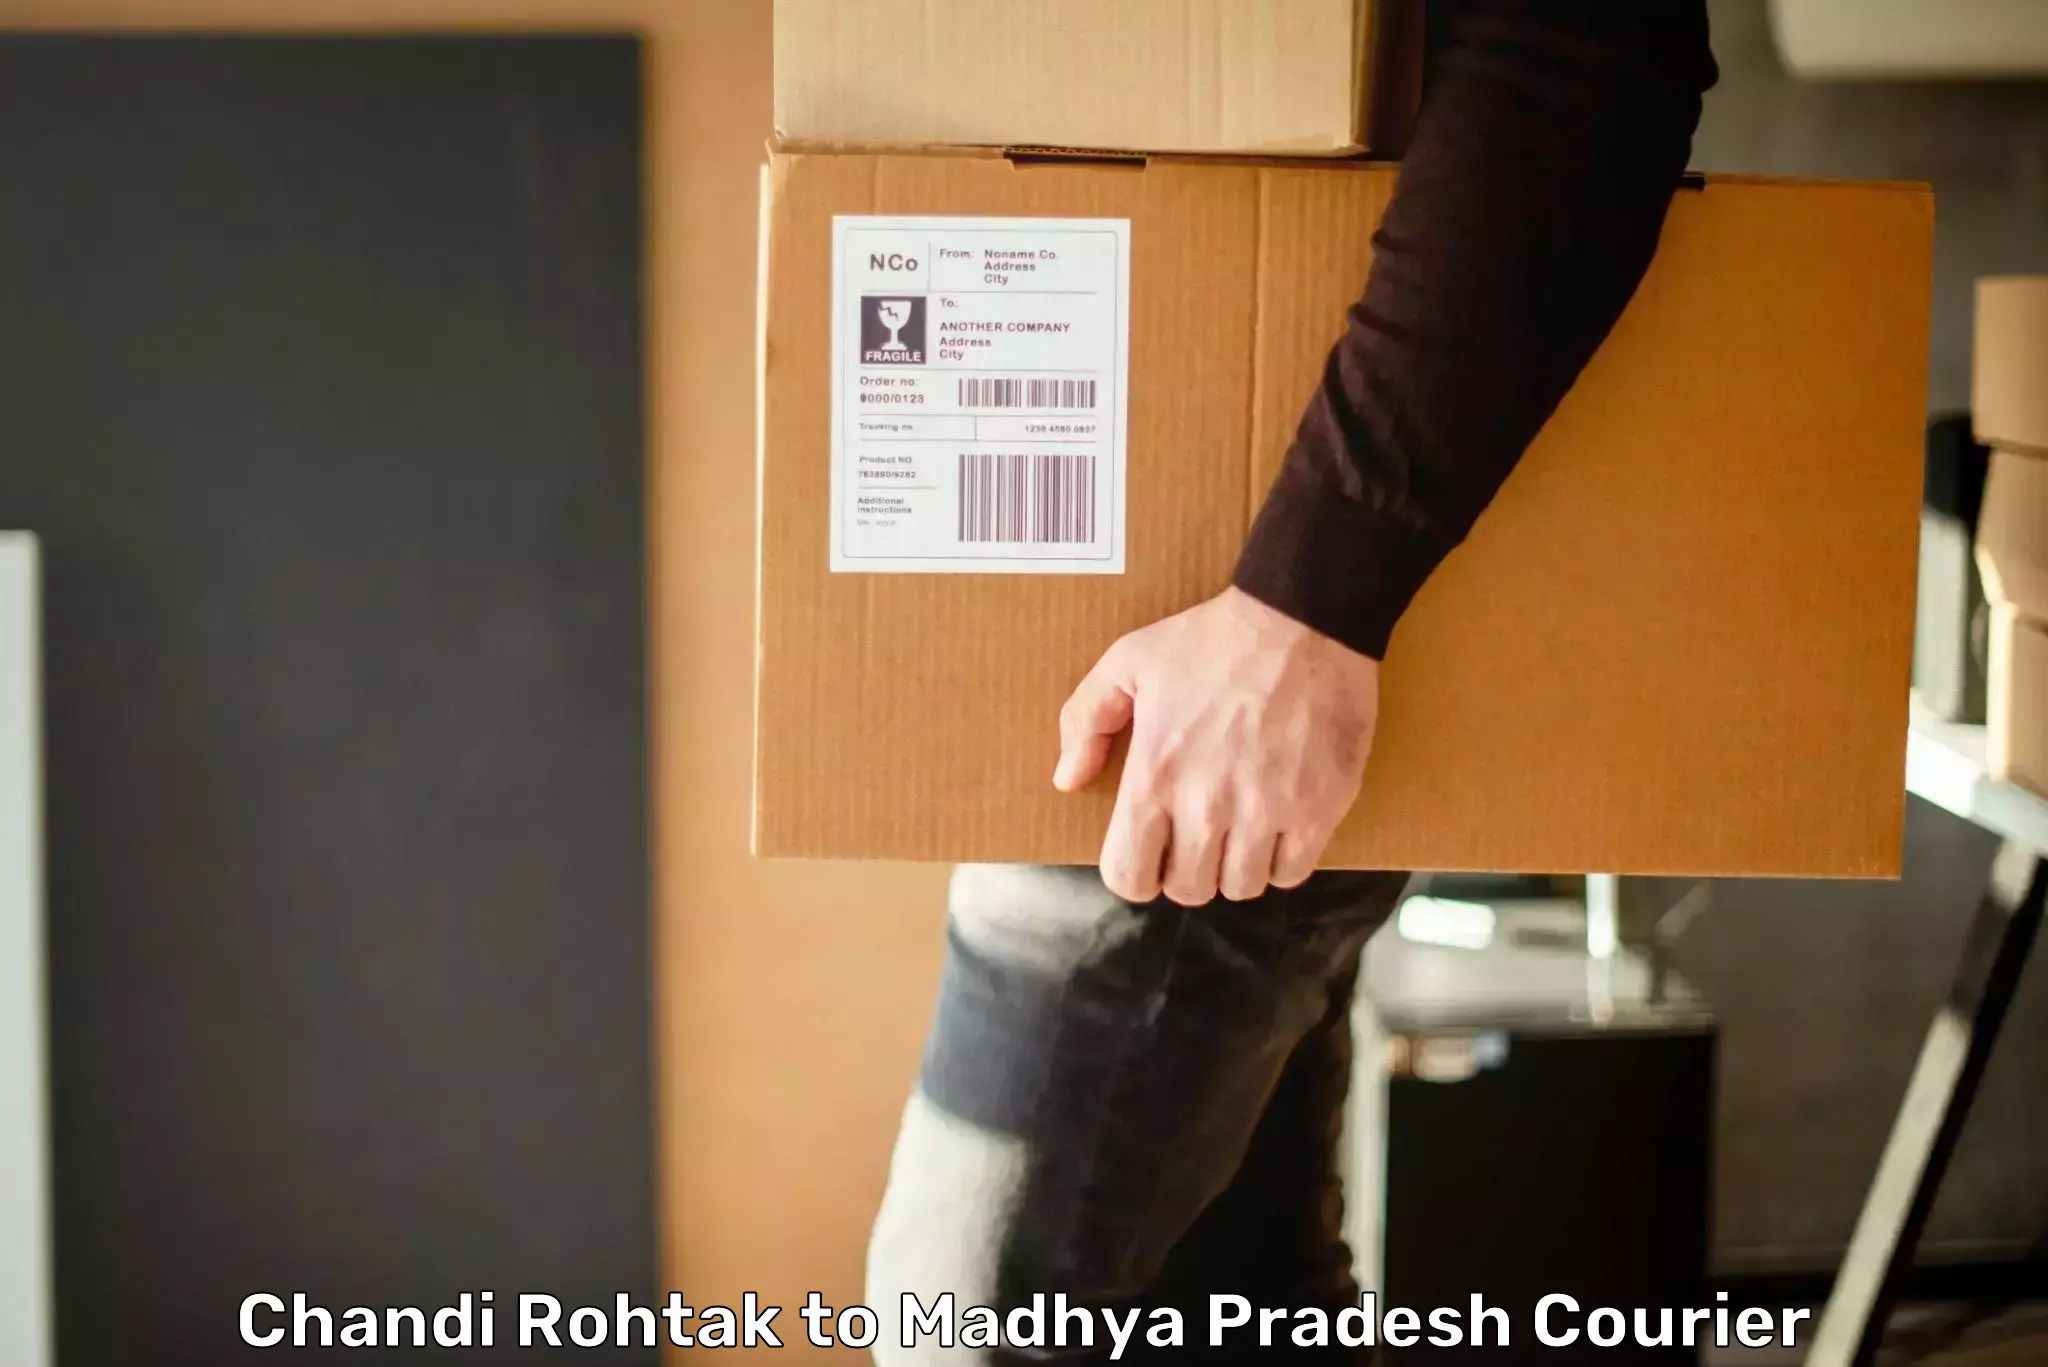 Express logistics providers Chandi Rohtak to Mandla